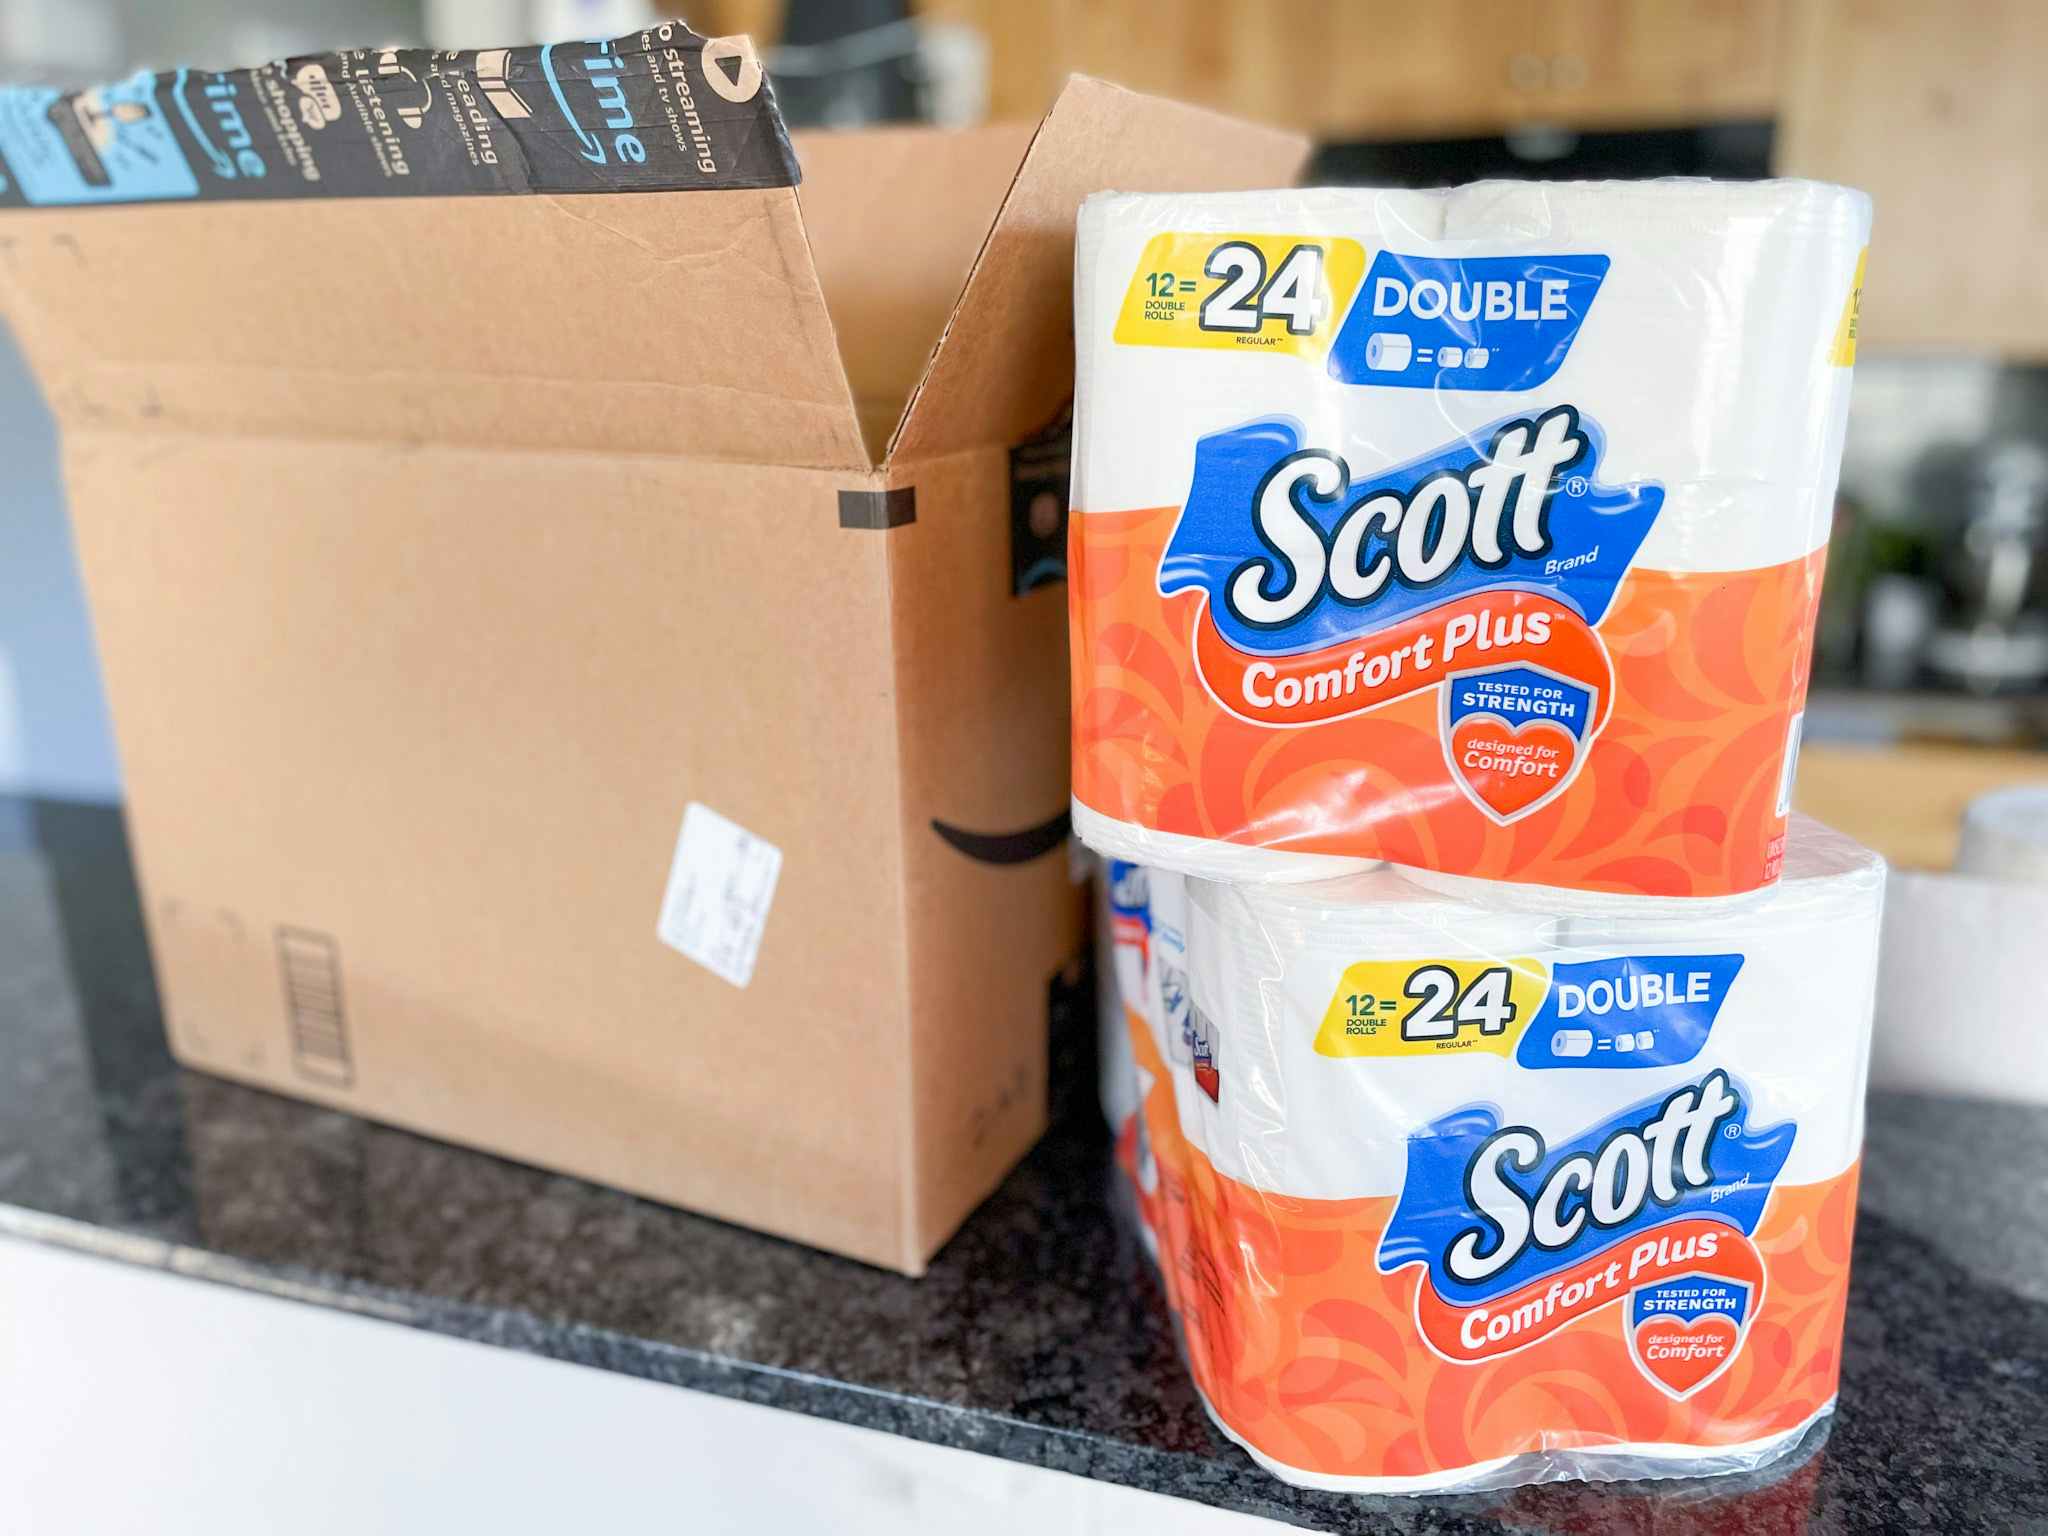 Scott ComfortPlus Toilet Paper: Get 12 Rolls for $4.19 on Amazon